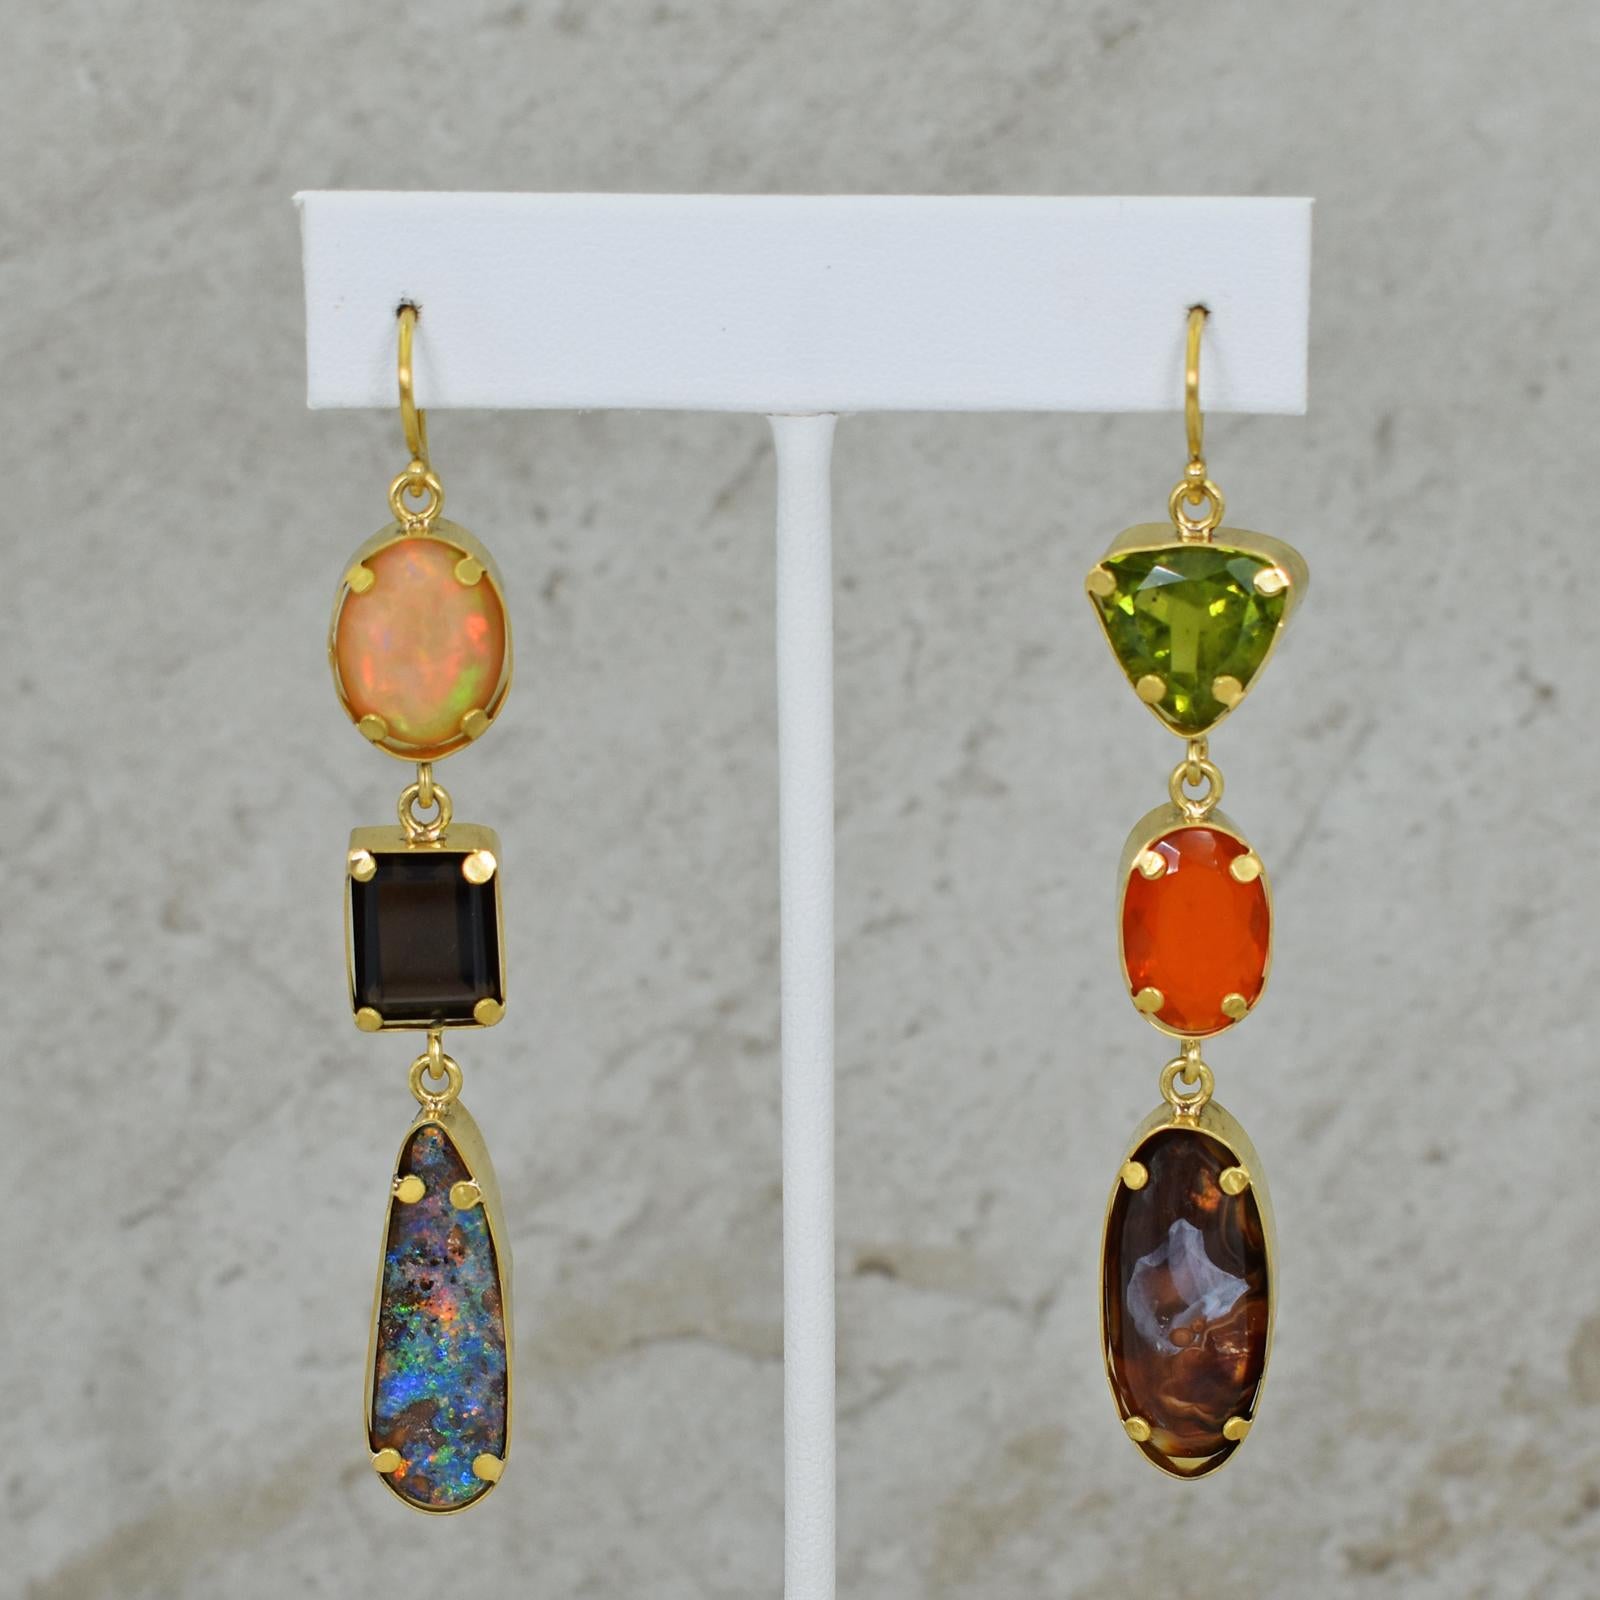 Boucles d'oreilles pendantes à trois niveaux en or jaune 22k forgé à la main, avec des pierres précieuses telles que l'opale d'Éthiopie (5,5 ct), le quartz fumé (5,4 ct), l'opale de roche d'Australie (8,3 ct), le péridot (7,2 ct), l'opale de feu du